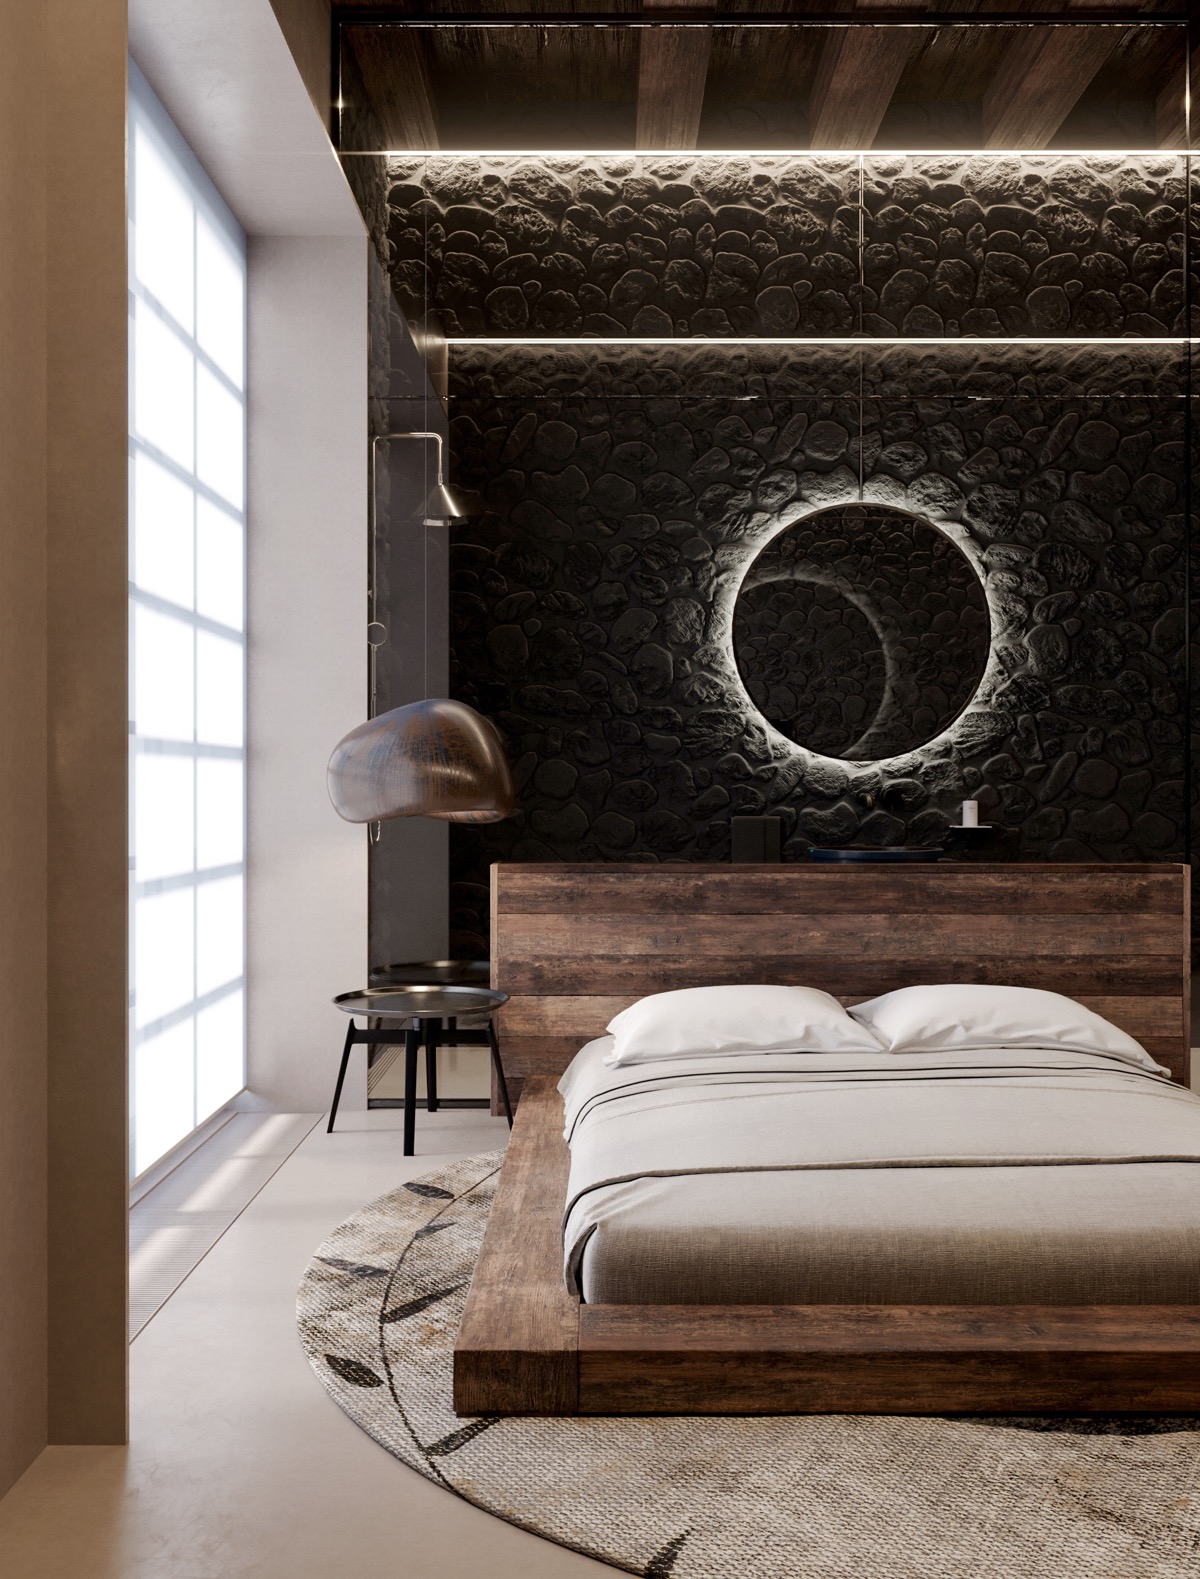 Một chiếc gương tròn gắn đèn LED tạo ra một quầng sáng trên tường màu đen. Phòng ngủ vì thế trở nên sinh động, có sức sống hơn.